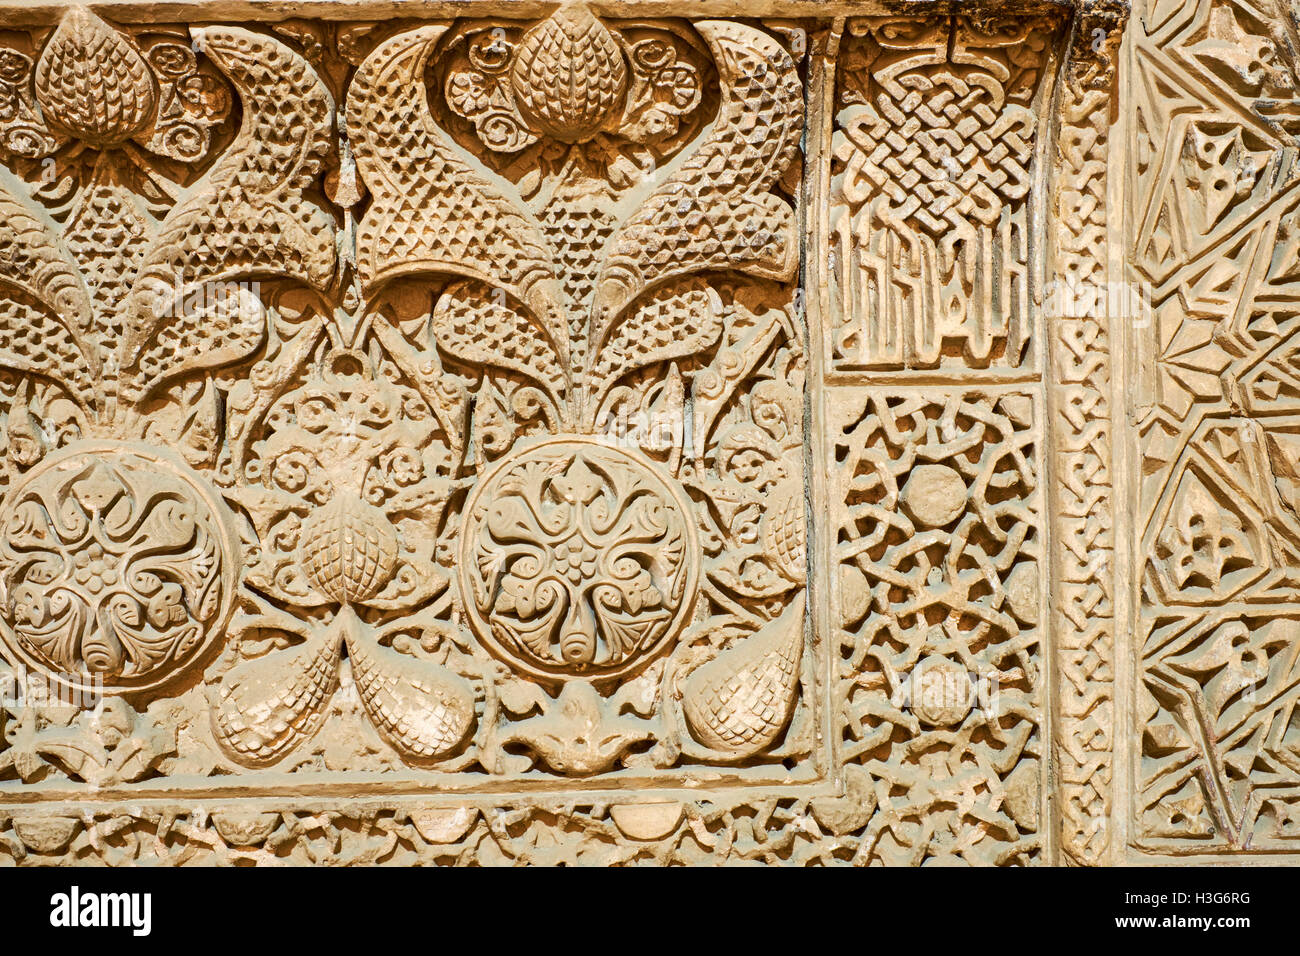 L'Iran, Ispahan, mosquée de vendredi, patrimoine mondial de l'UNESCO, le stuc mihrab Banque D'Images